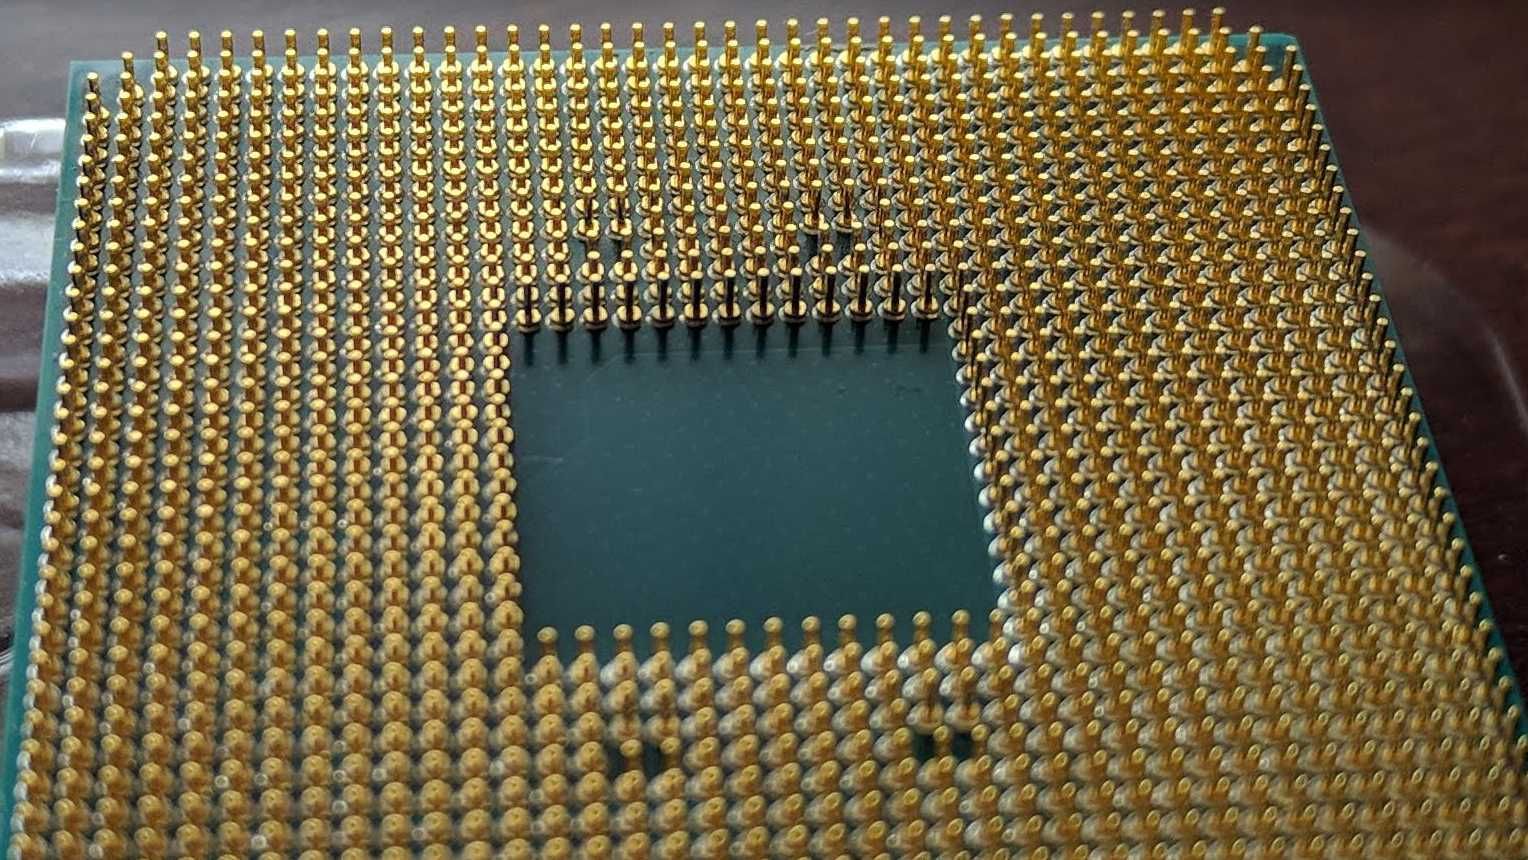 Procesor AMD RYZEN 7 2700x - wersja BOX